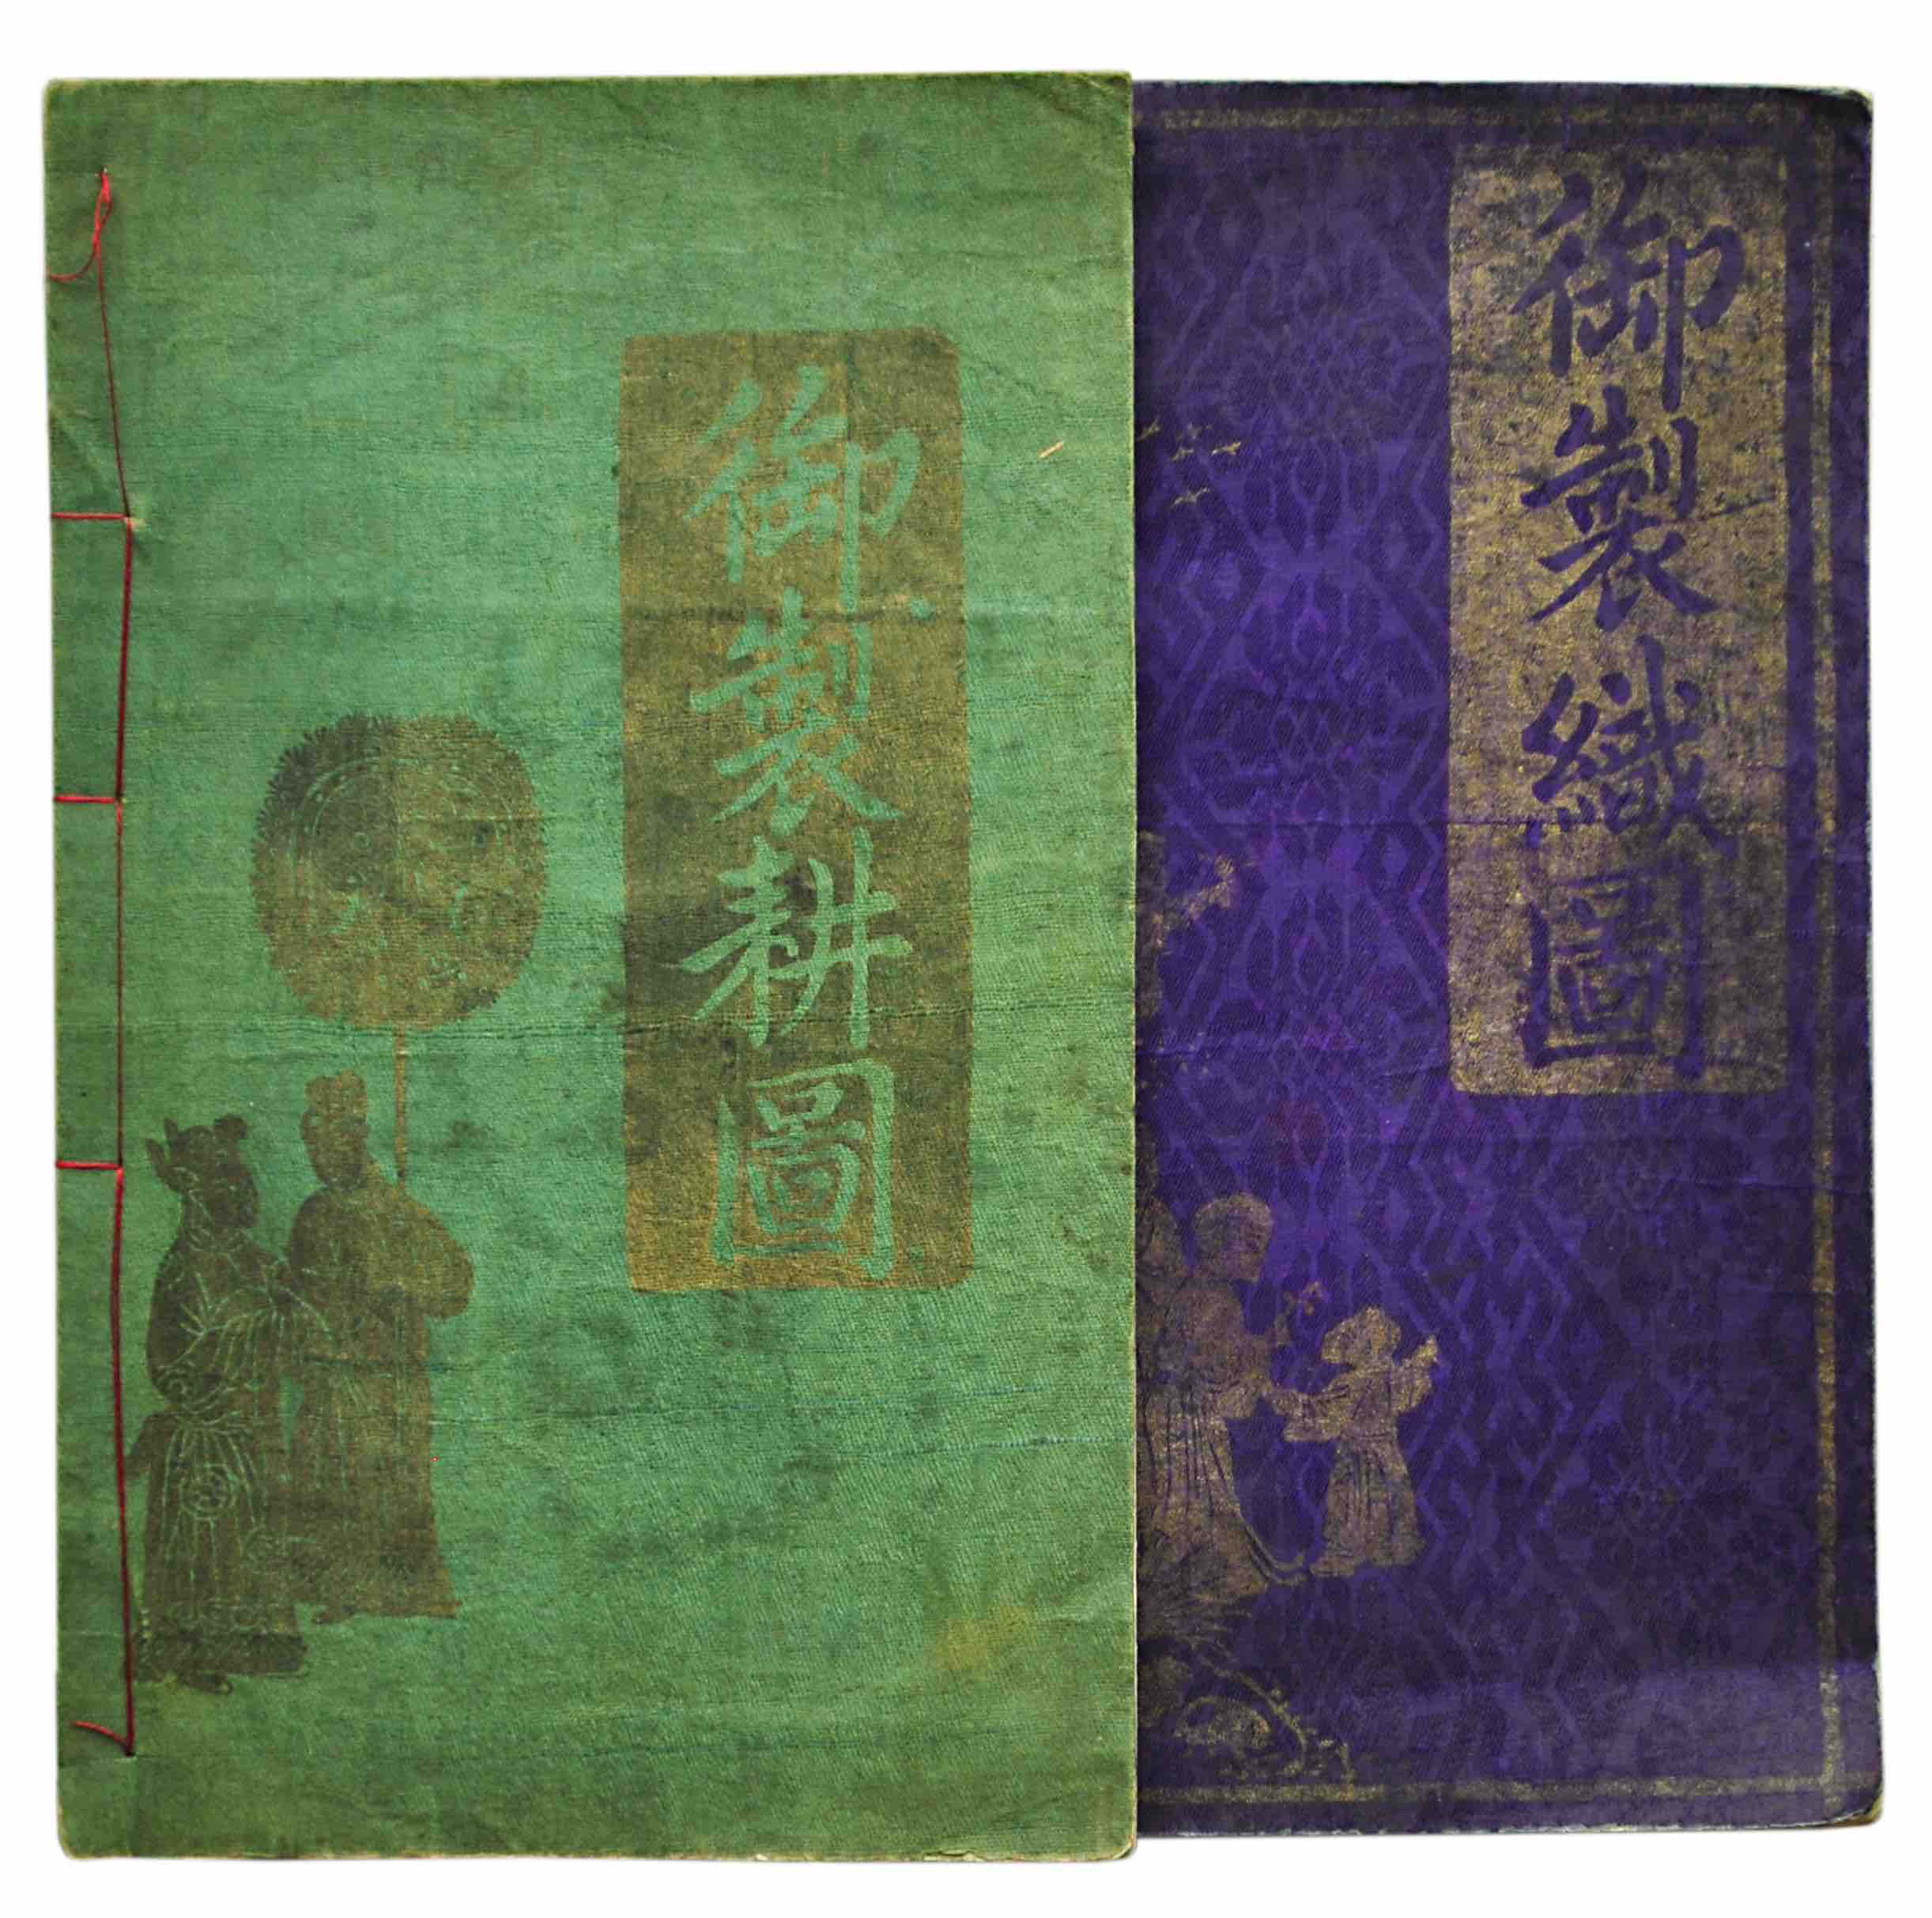 [JIAO, BINGZHEN]: -  Yu zhi geng zhi tu       (Imperially Commissioned Illustrations of Agriculture and Sericulture). Two volumes. Shanghai, Dian shi zhai, Guangxu 5 (1879).